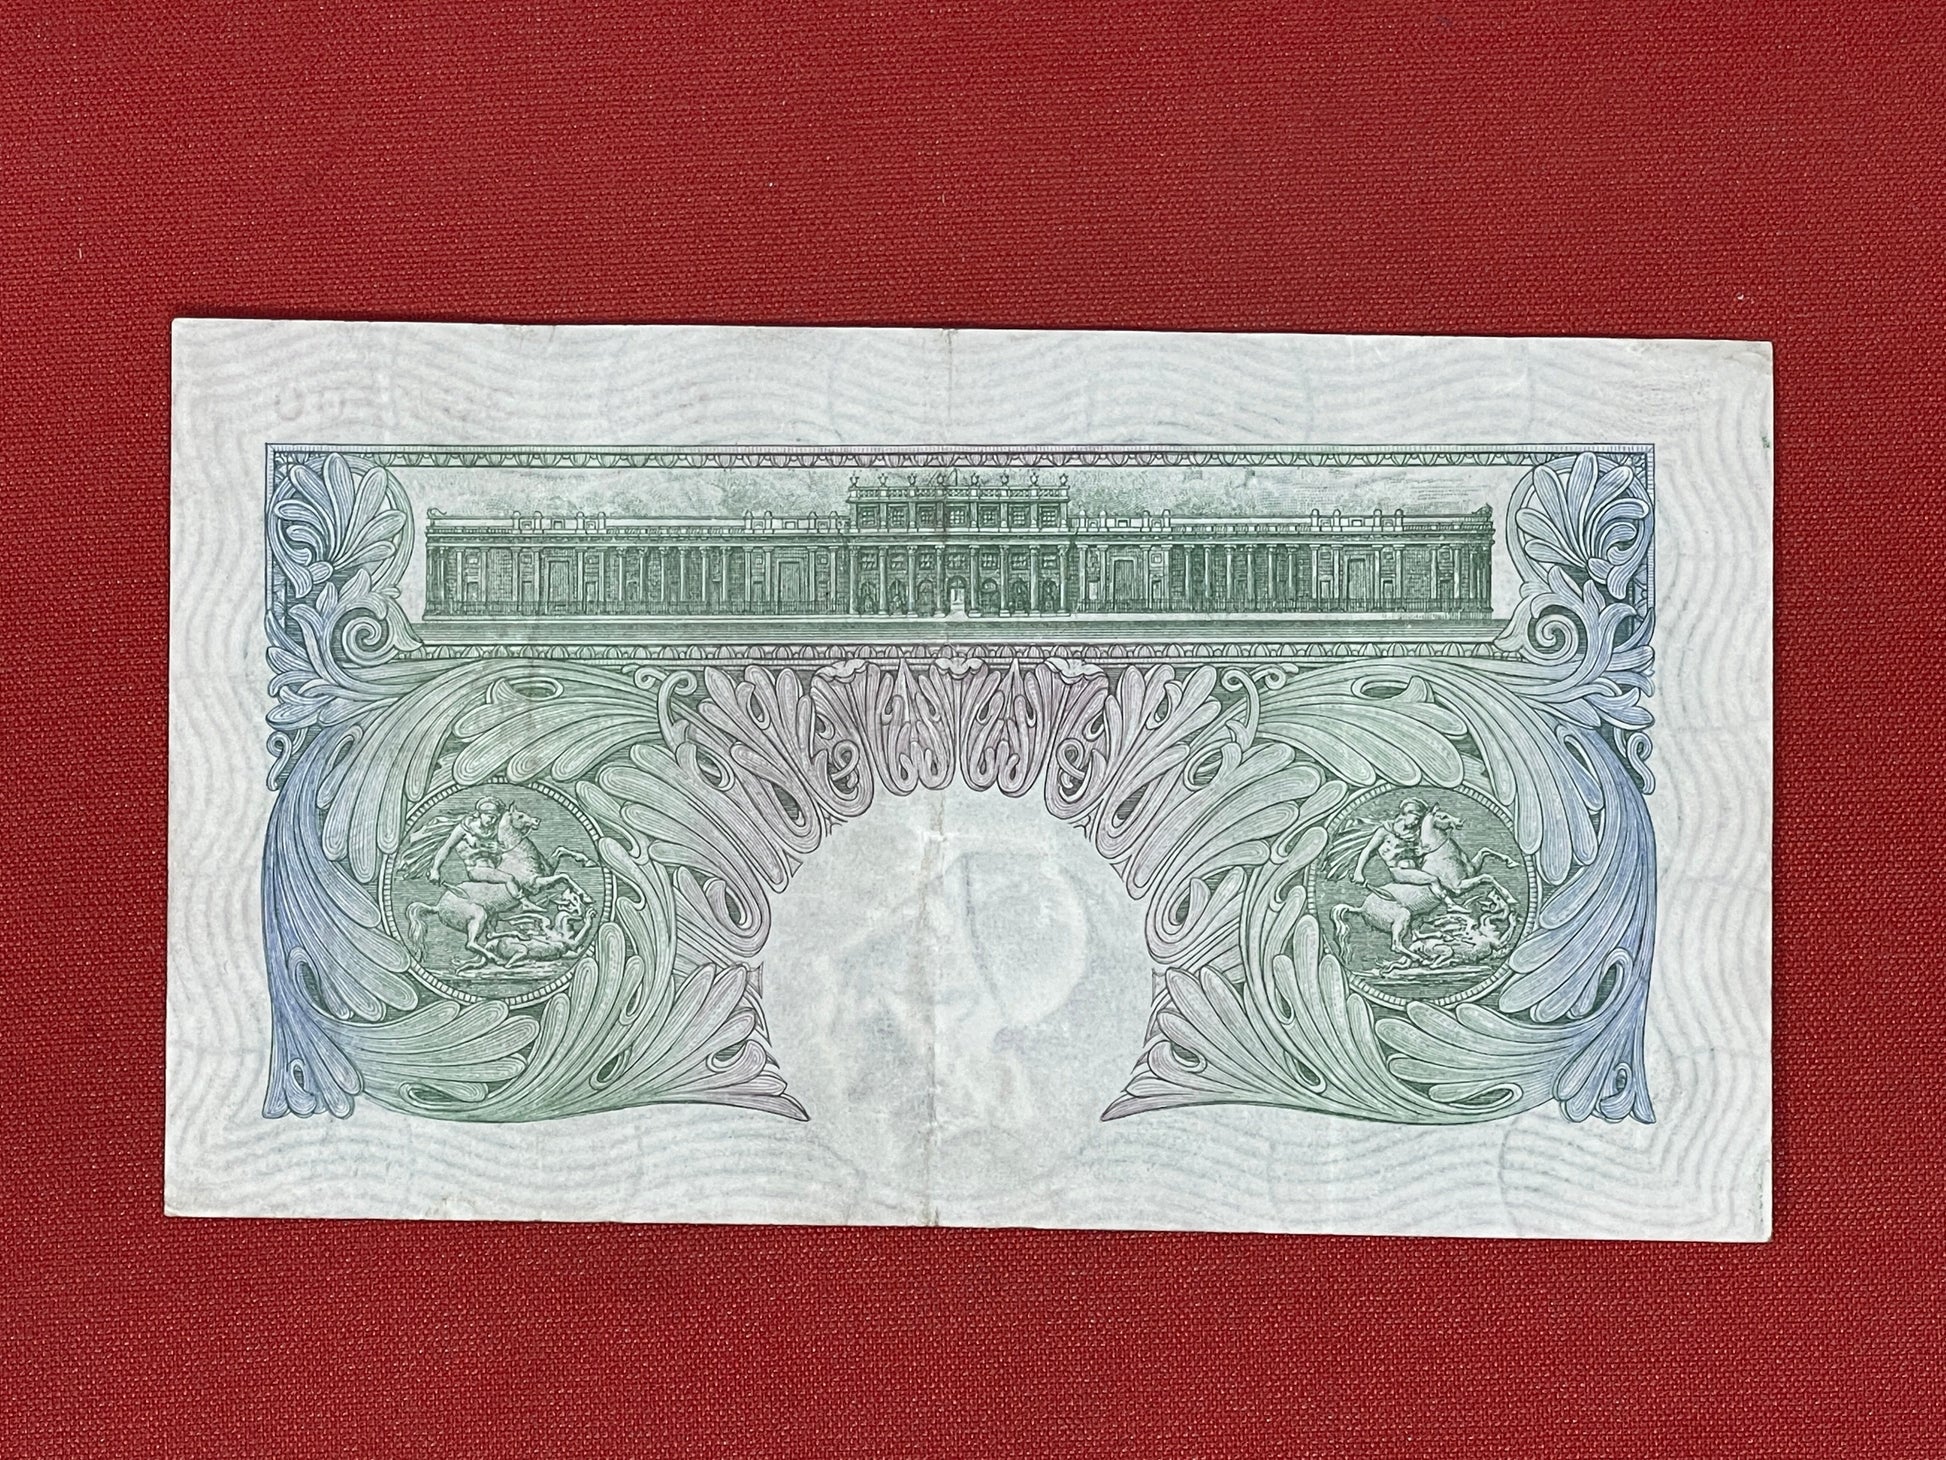 C.P. Mahon, One Pound, G89 367700 ( Dugg. B.212 ) Series "A" Britannia Issue November 1928